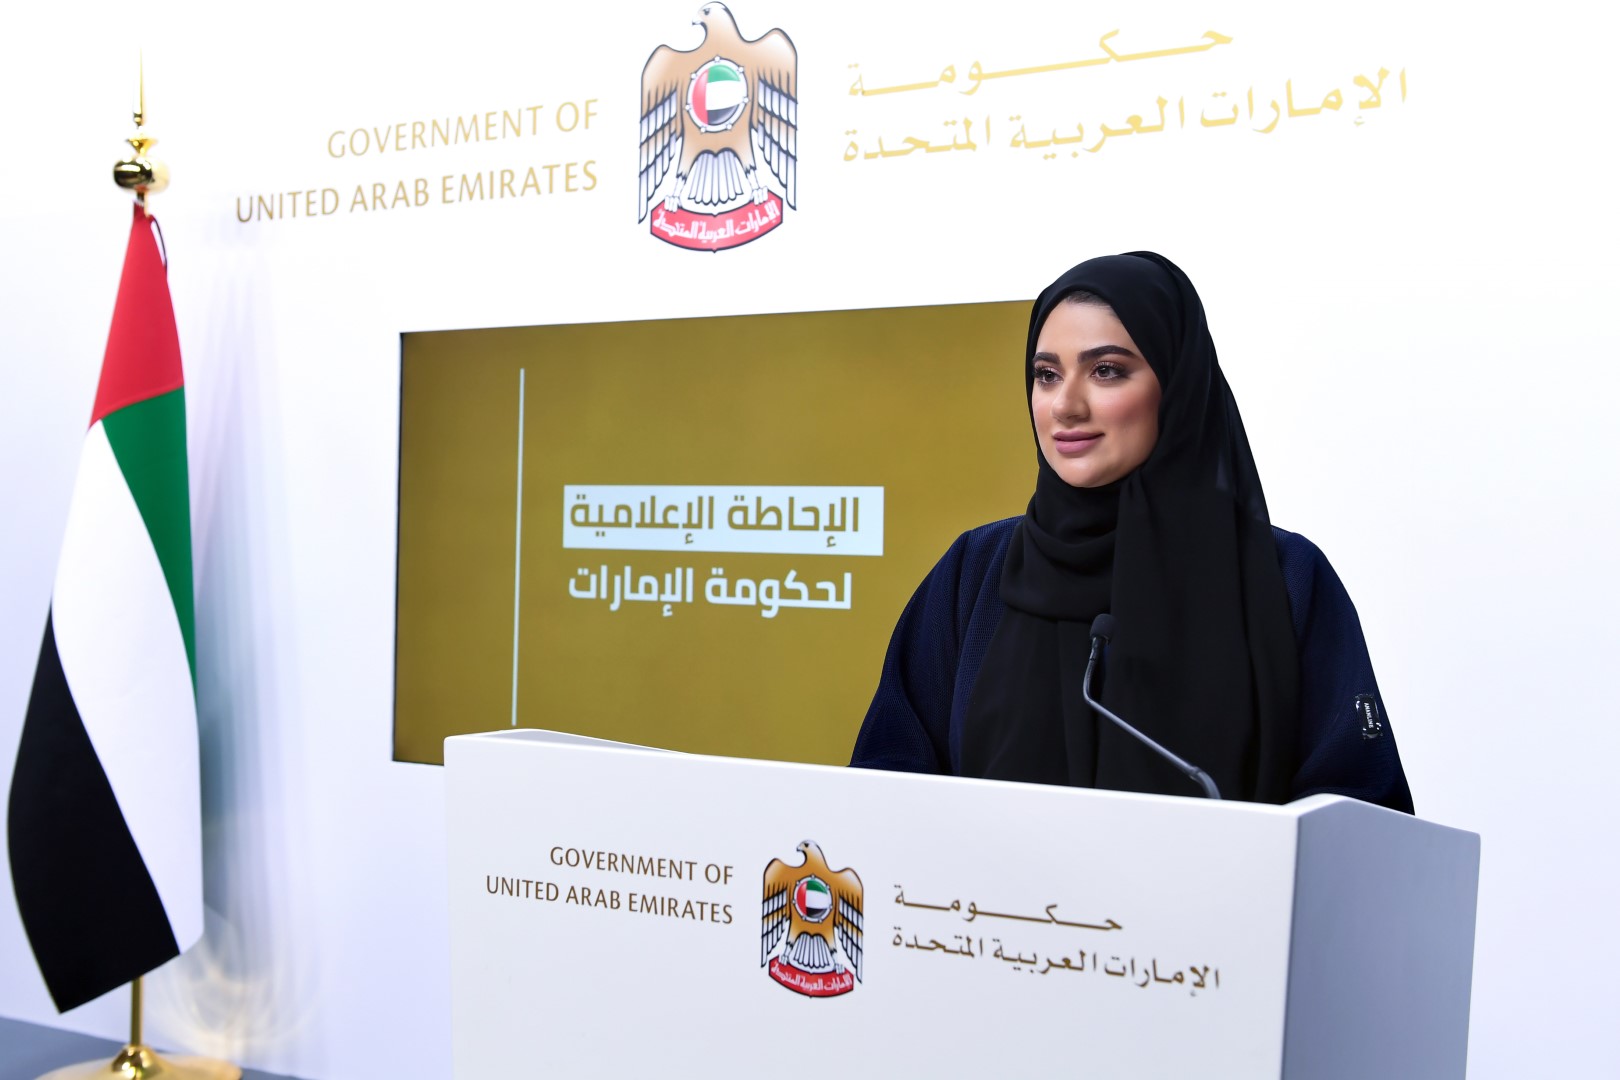 الإحاطة الإعلامية لحكومة الإمارات: إجراءات الدولة في مواجهة "كورونا" ساهمت في بث الطمأنينة و الشعور بالأمان لدى أفراد المجتمع بنسبة قاربت 98%